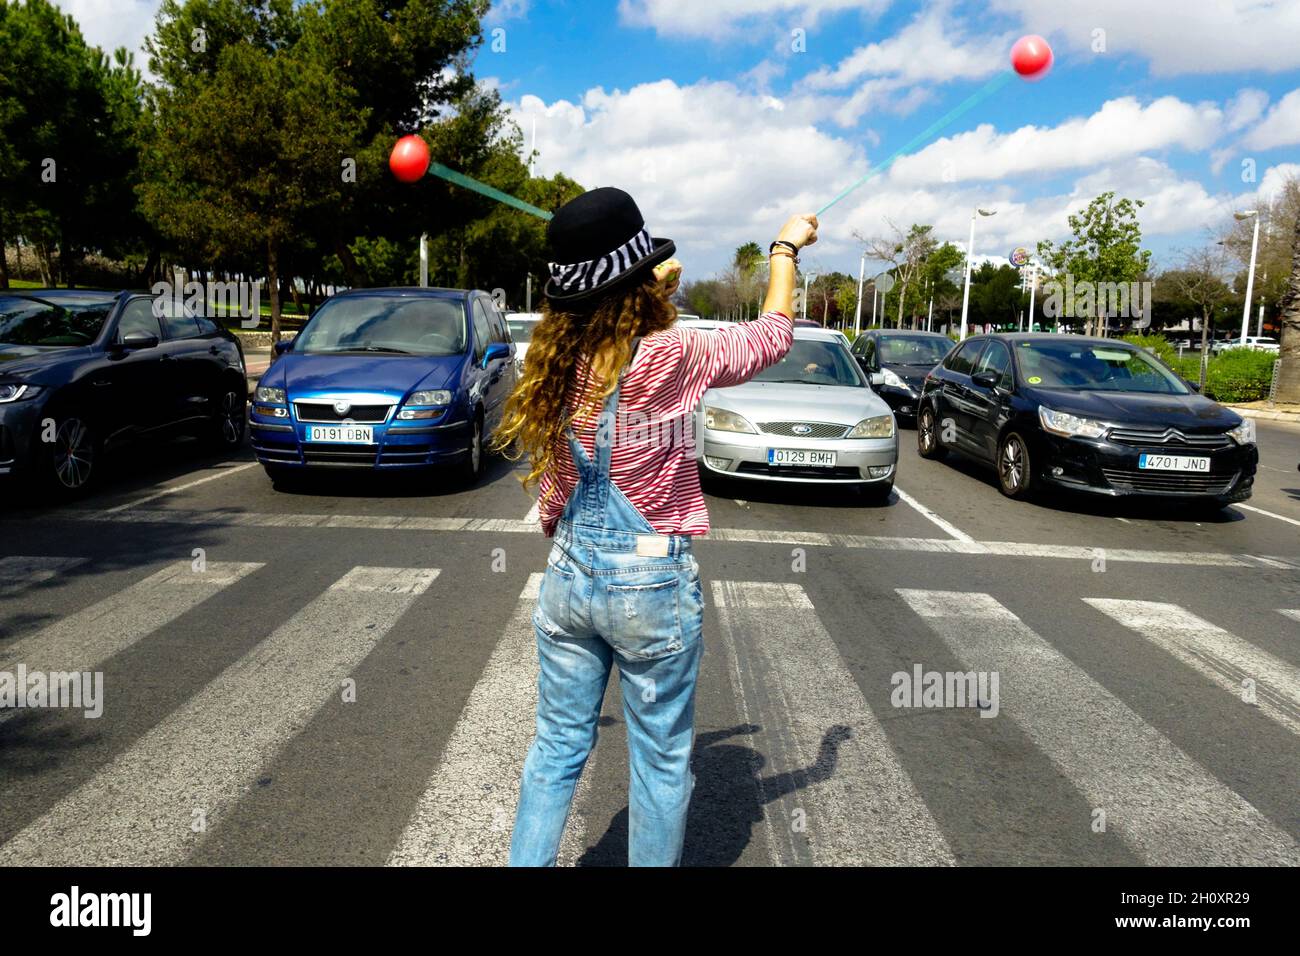 Femme interprète de rue avec des balles sur un passage à niveau pour recueillir de l'argent des automobilistes Valence Espagne Banque D'Images